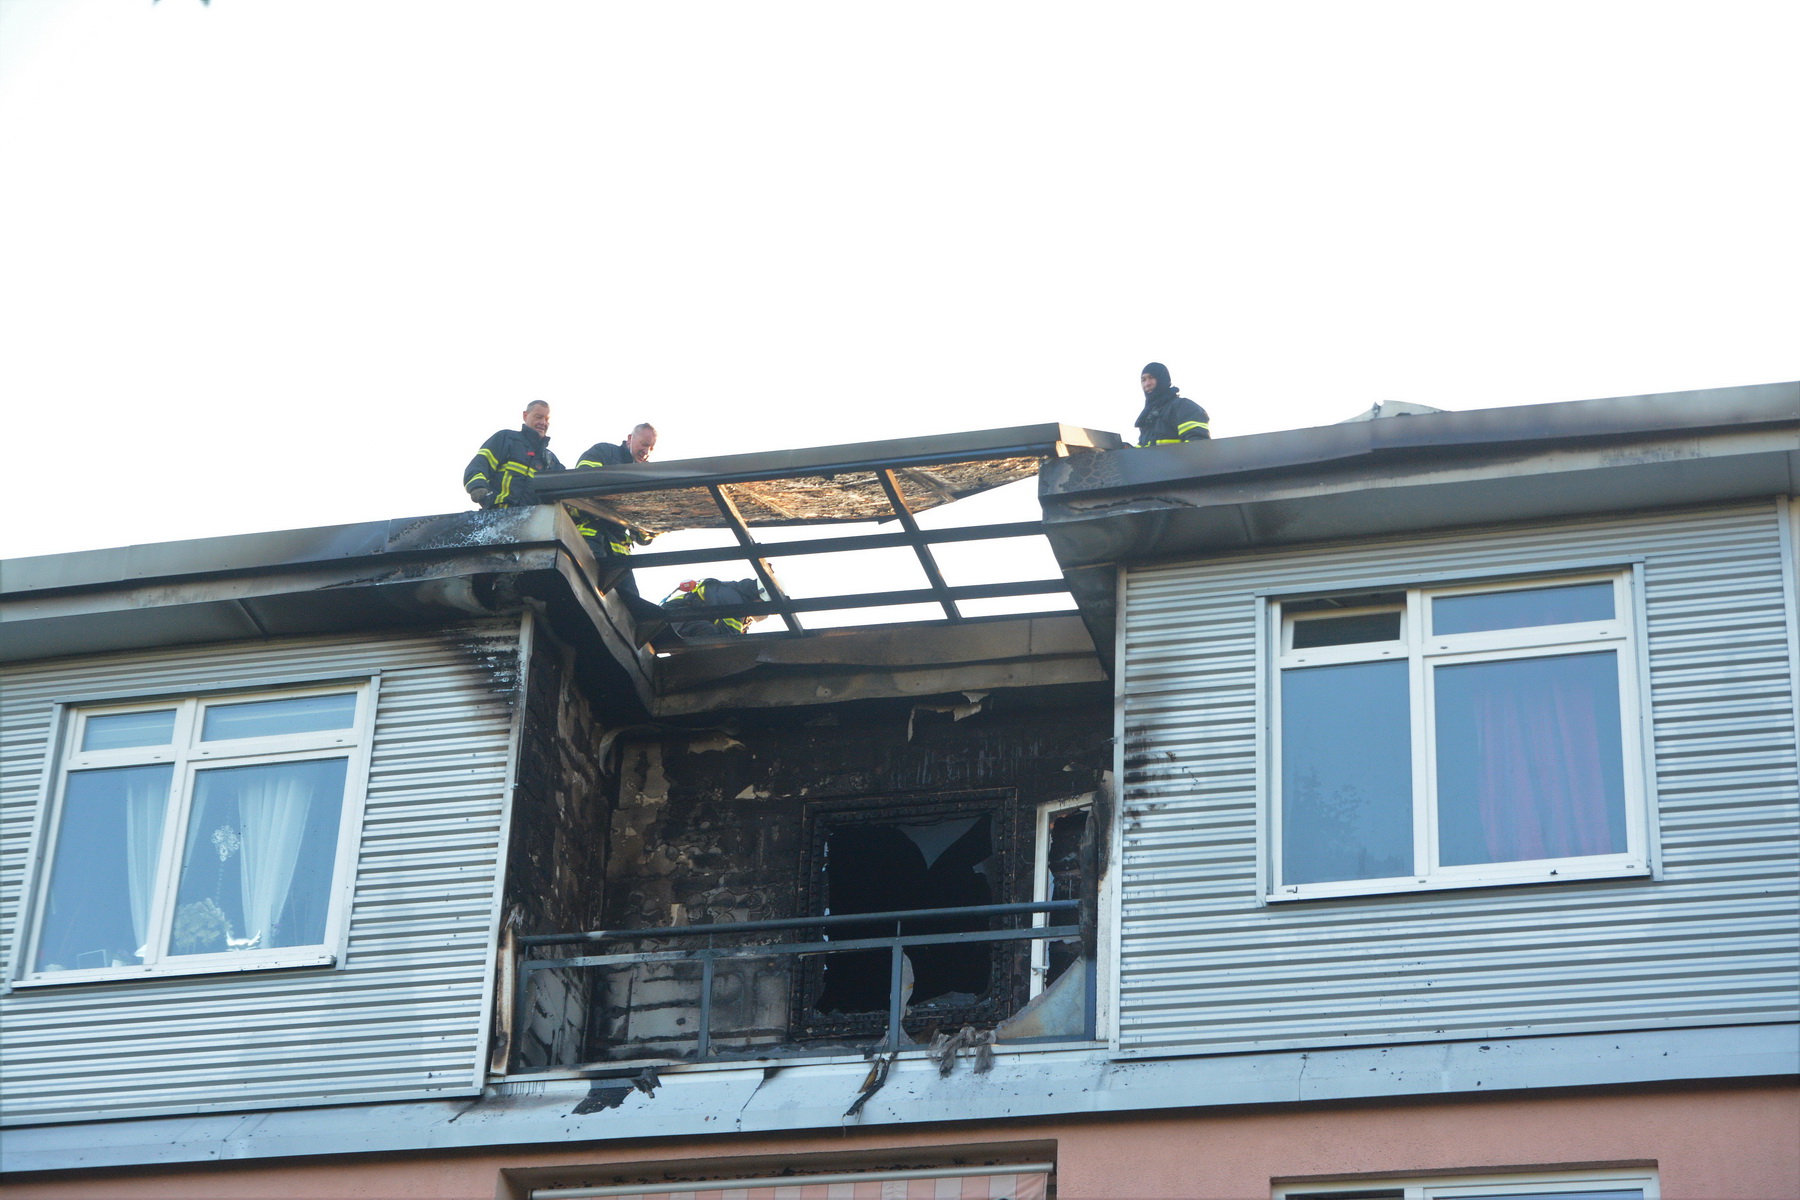 Feuerwehrkräfte nehmen Dachpfannen ab, um nach Glutnestern zu schauen.